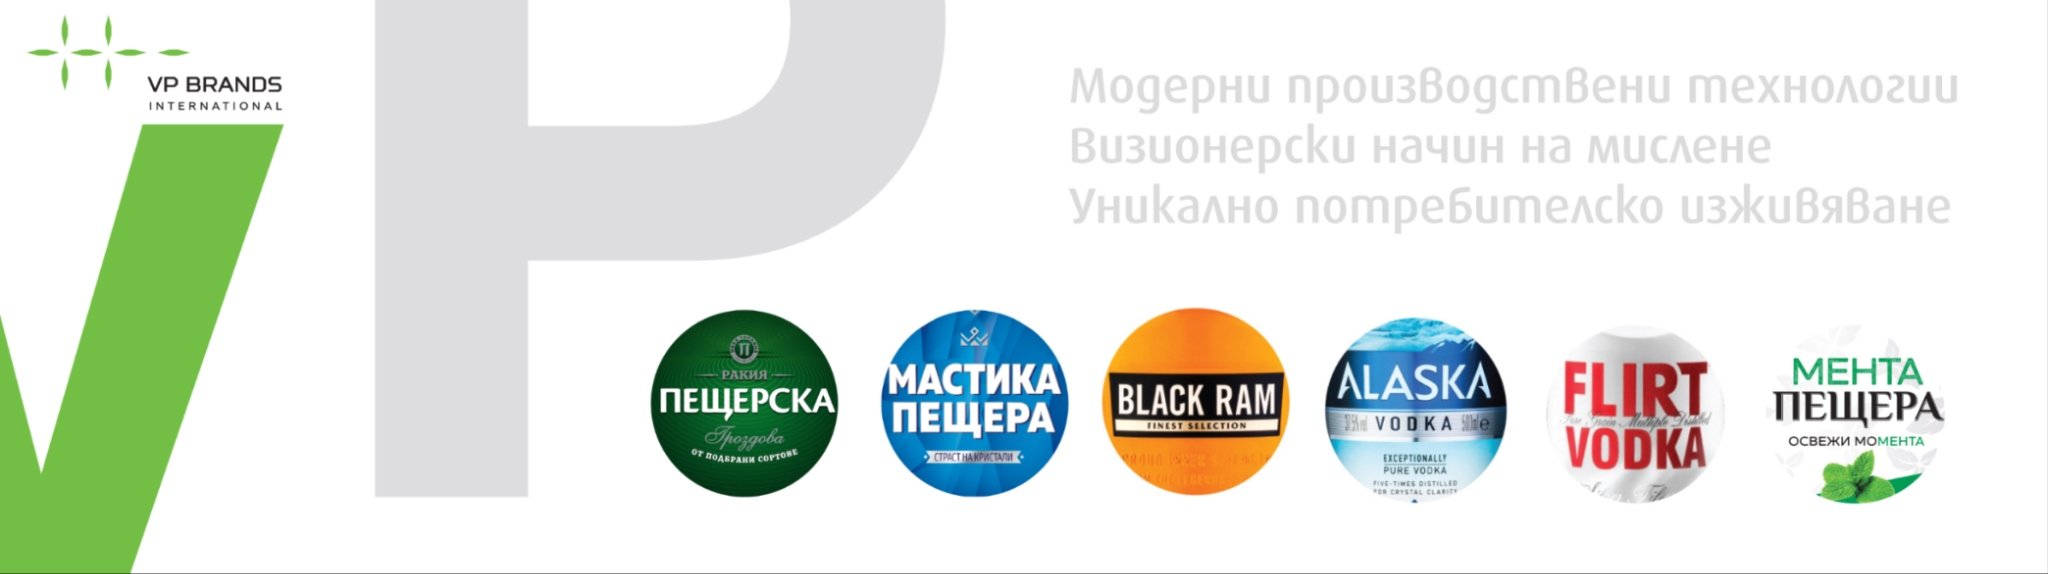 Плюцова-Порязов-2018 logo